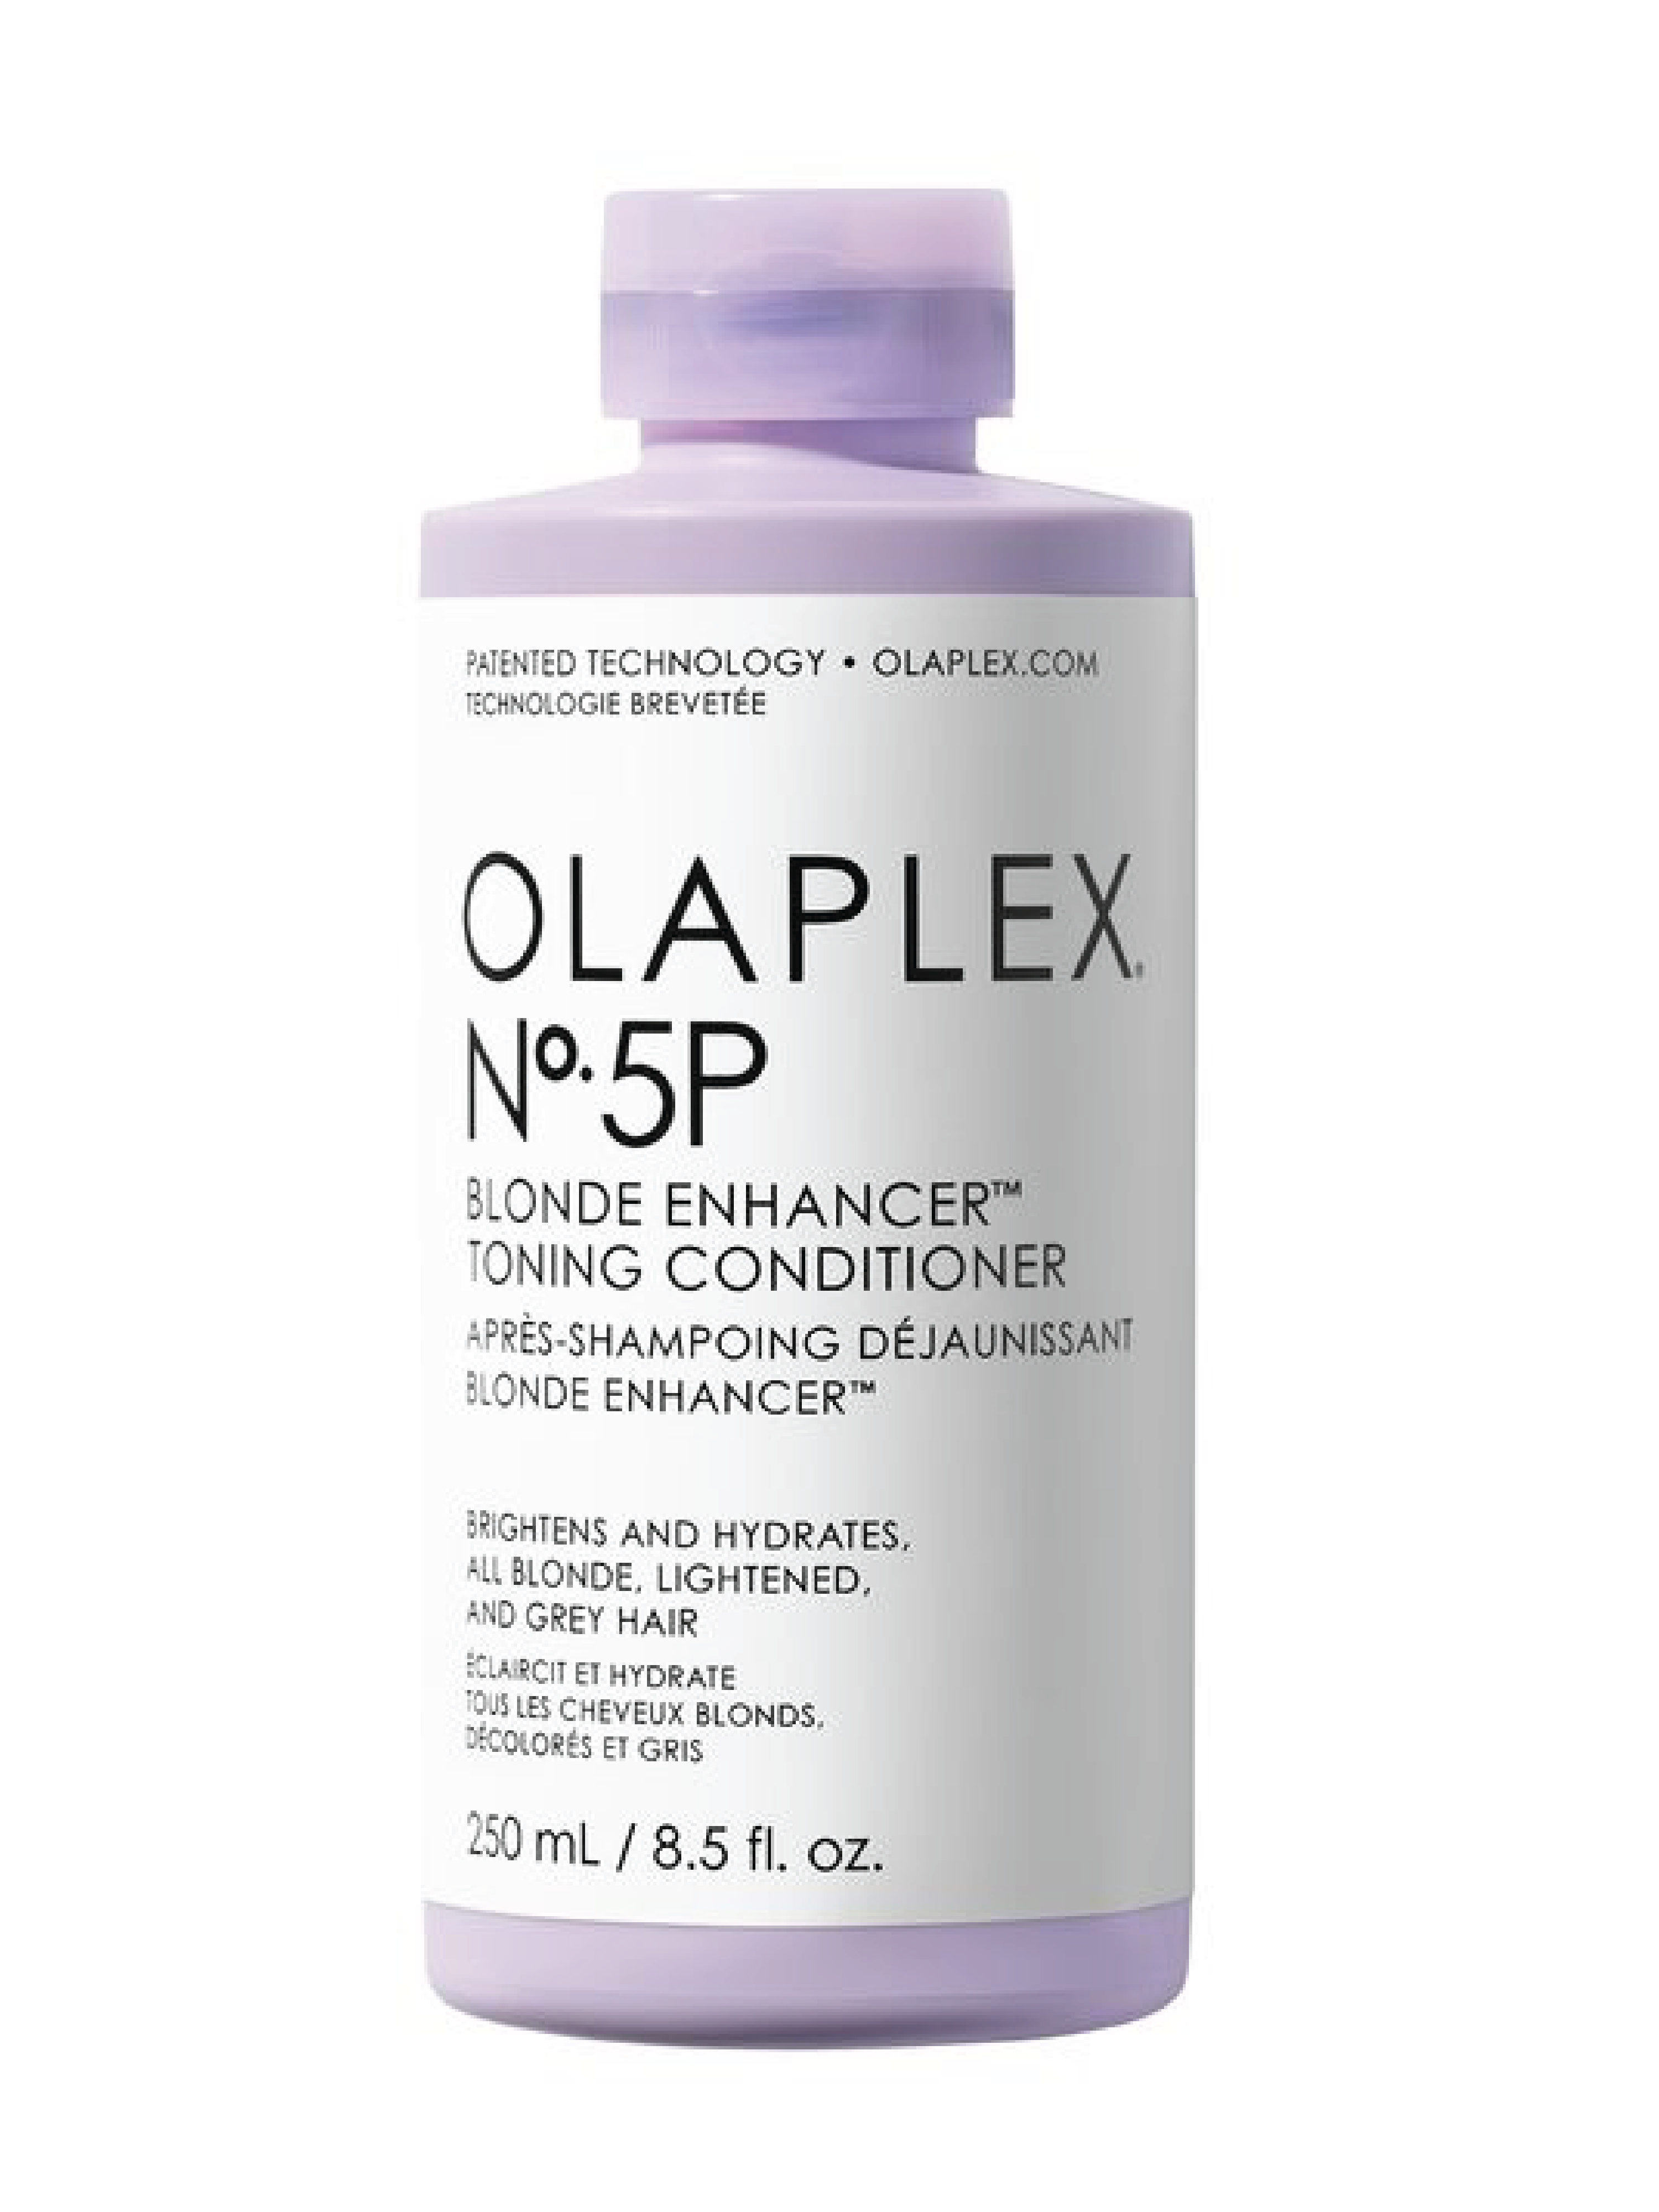 Olaplex No.5P Blonde Enhancer Toning Conditioner, 250 ml